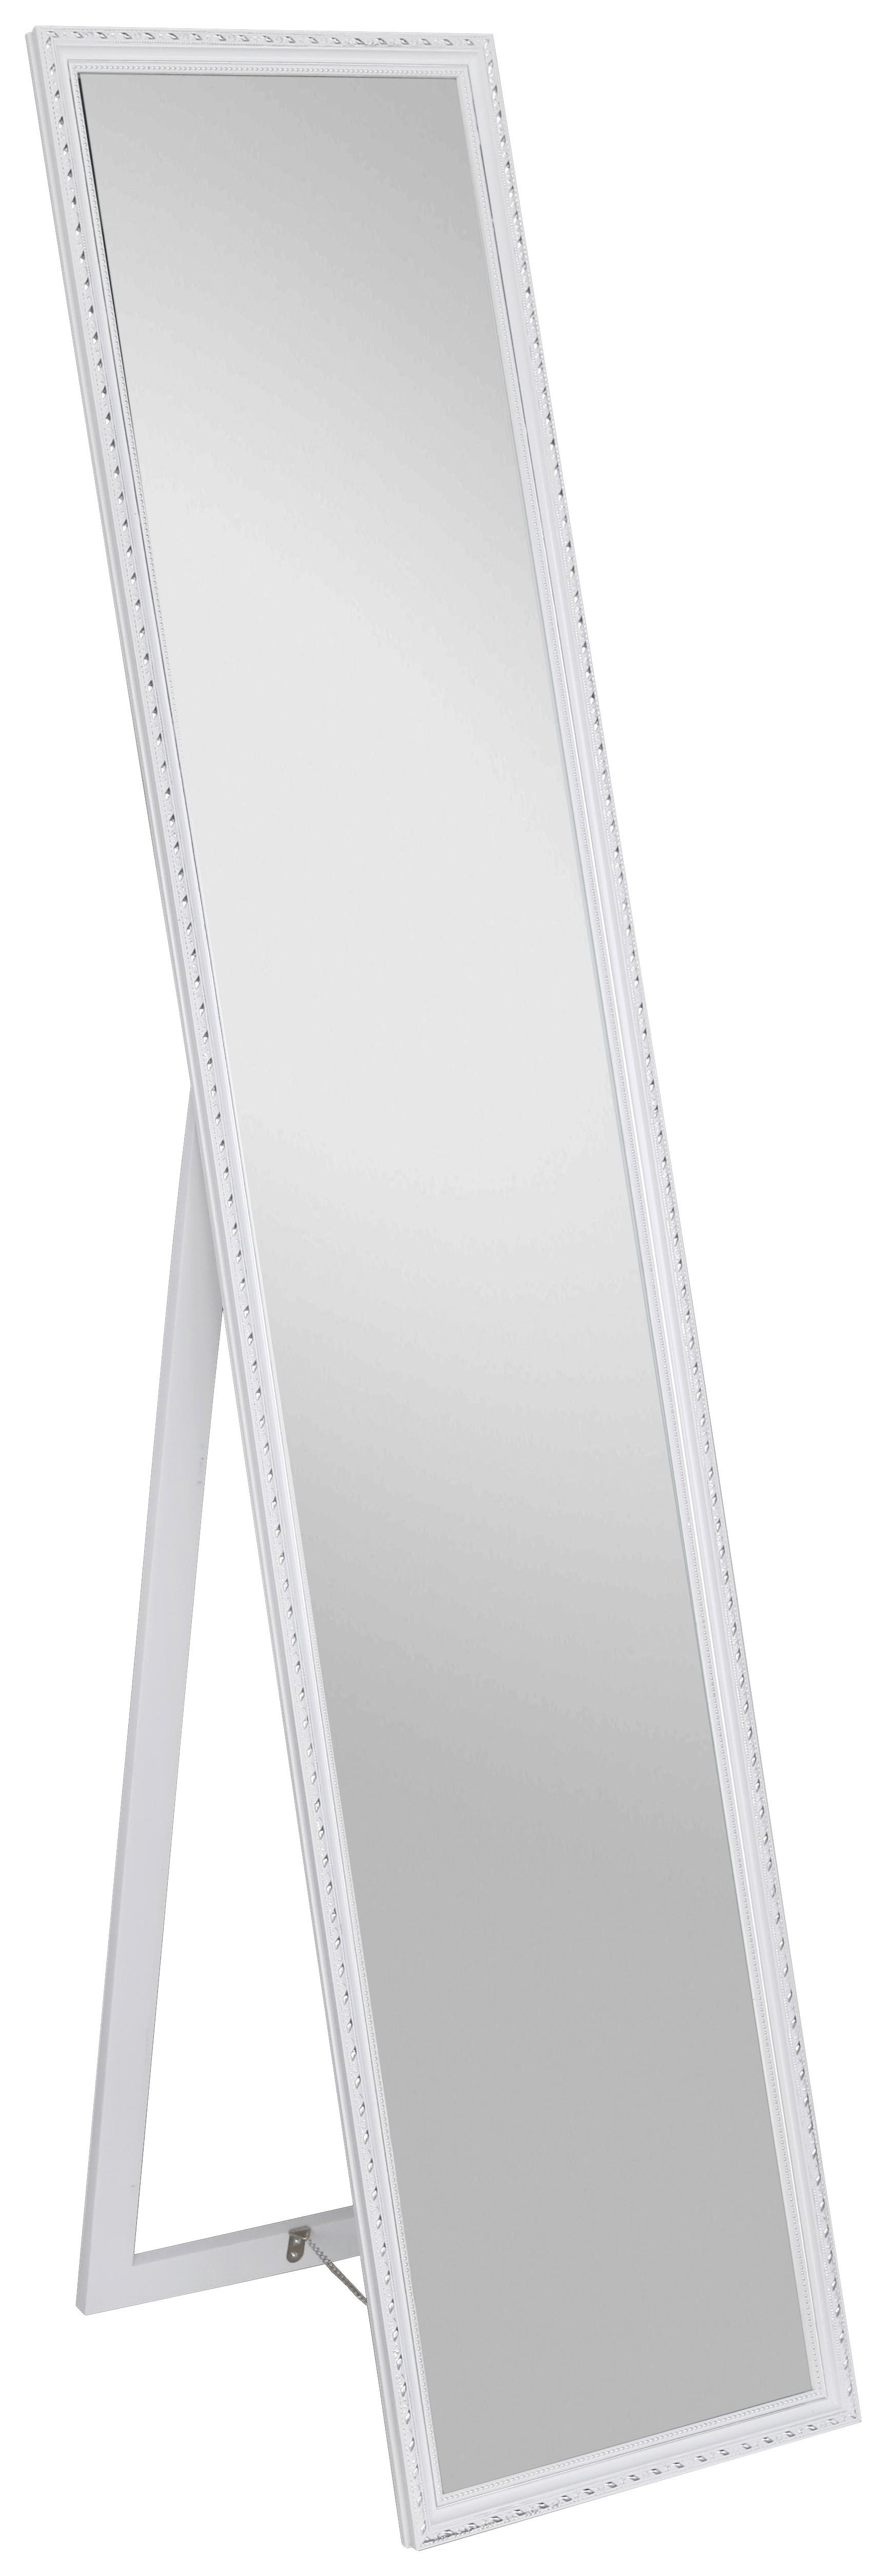 Standspiegel Pisa Rechteckig 34x160 cm mit Holzrahmen Weiß - Silberfarben/Weiß, MODERN, Glas/Holz (34/160/2,3cm)